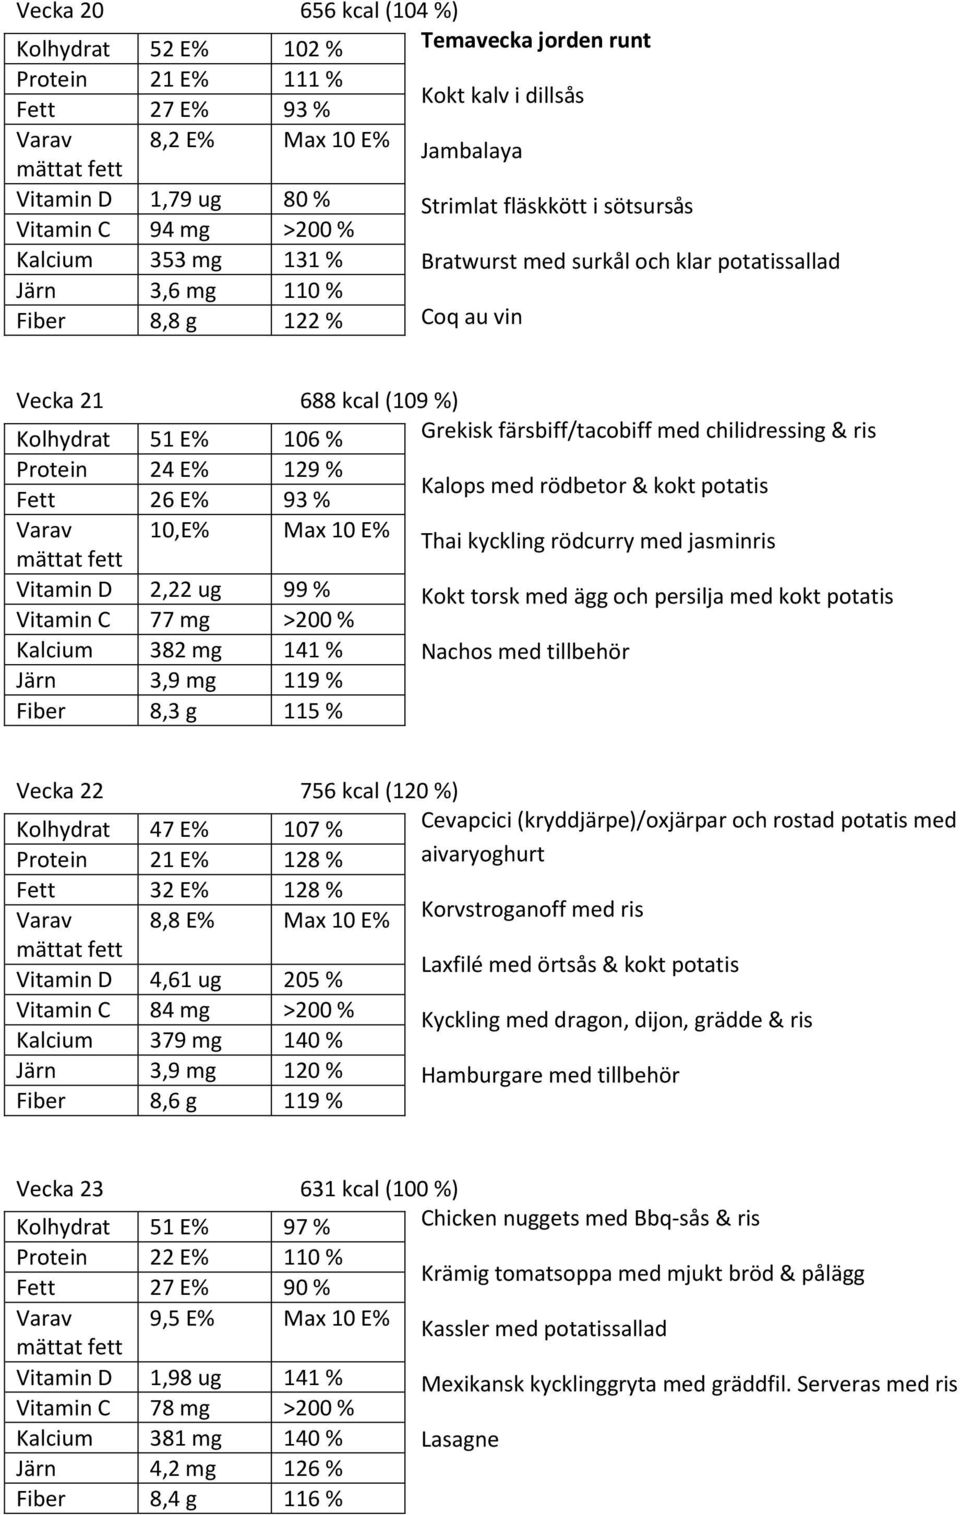 10,E% 2,22 ug 129 % 99 % 26 E% 77 mg 93 % Kalops med rödbetor & kokt potatis Thai kyckling rödcurry med jasminris Kokt torsk med ägg och persilja med kokt potatis Kalcium 382 mg 141 % Nachos med